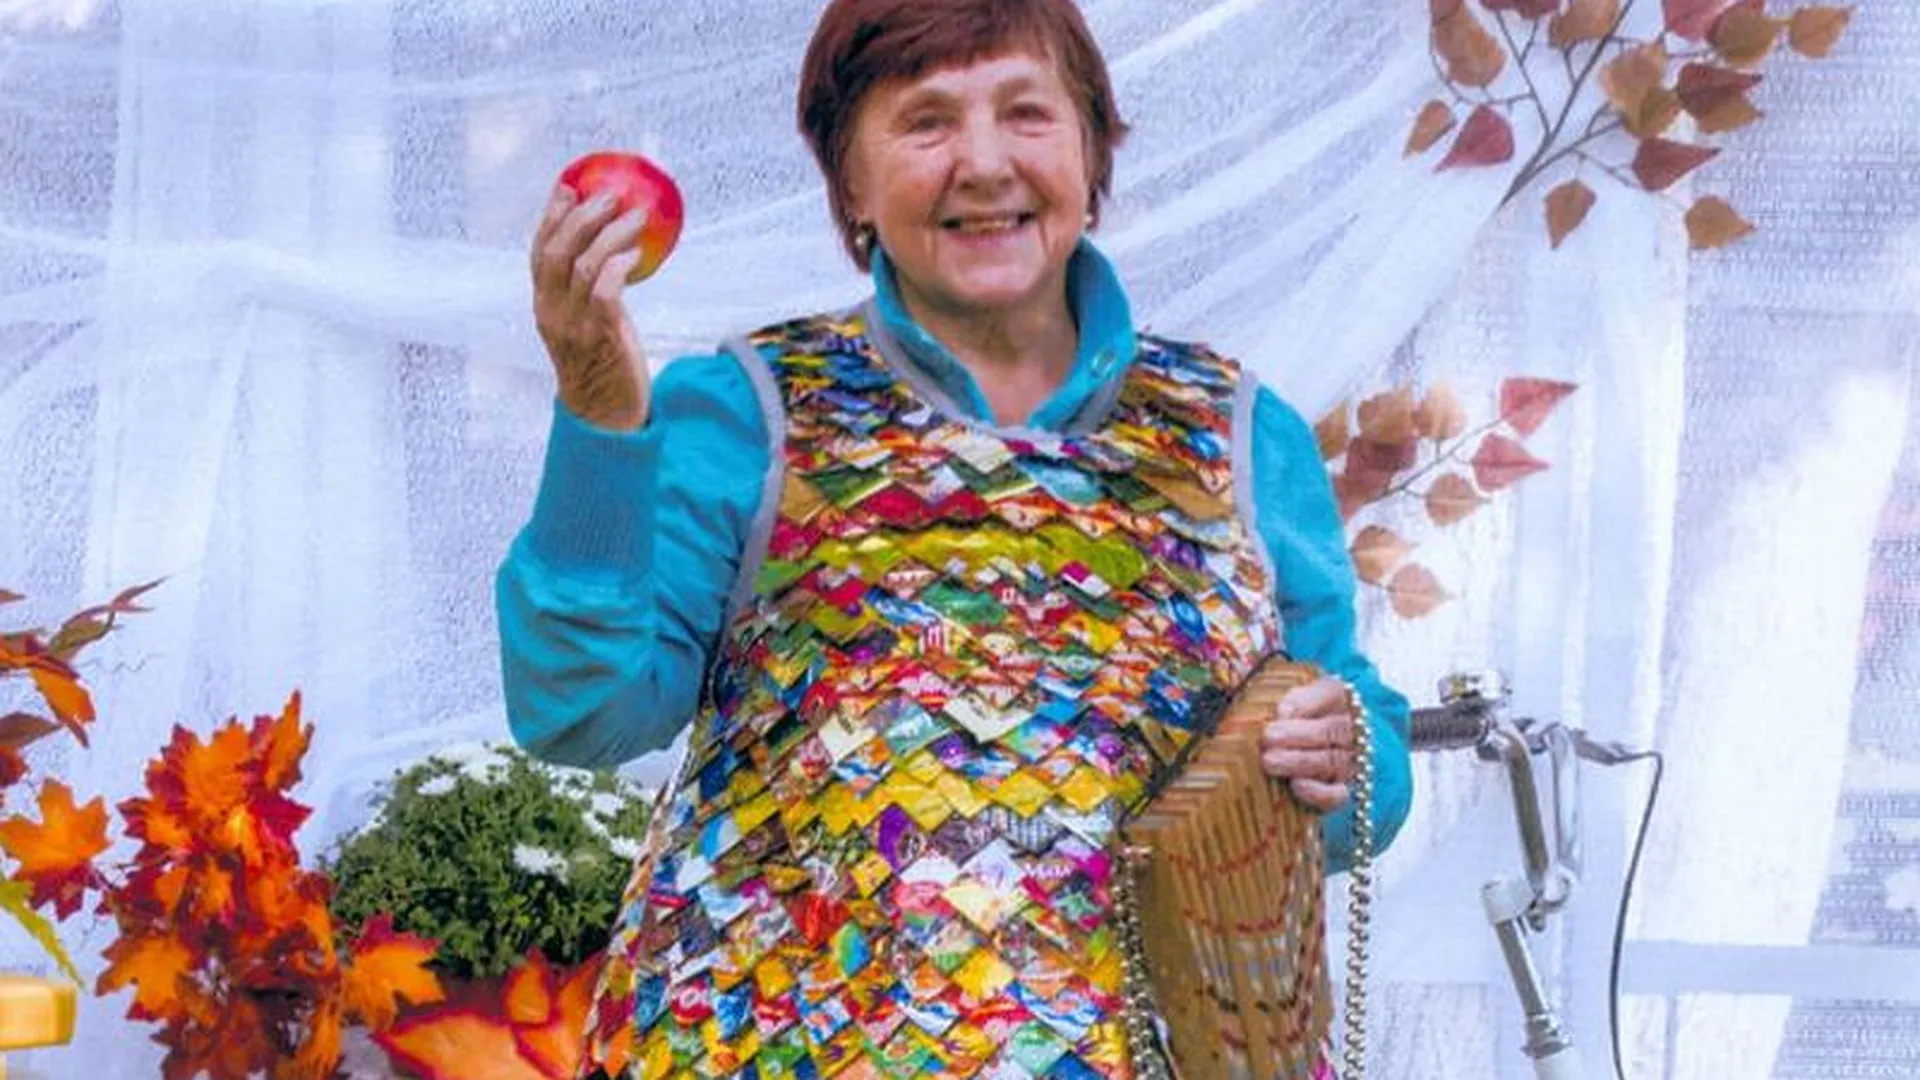 Пенсионерка из Щелкова сшила платье из 2,5 тысяч фантиков